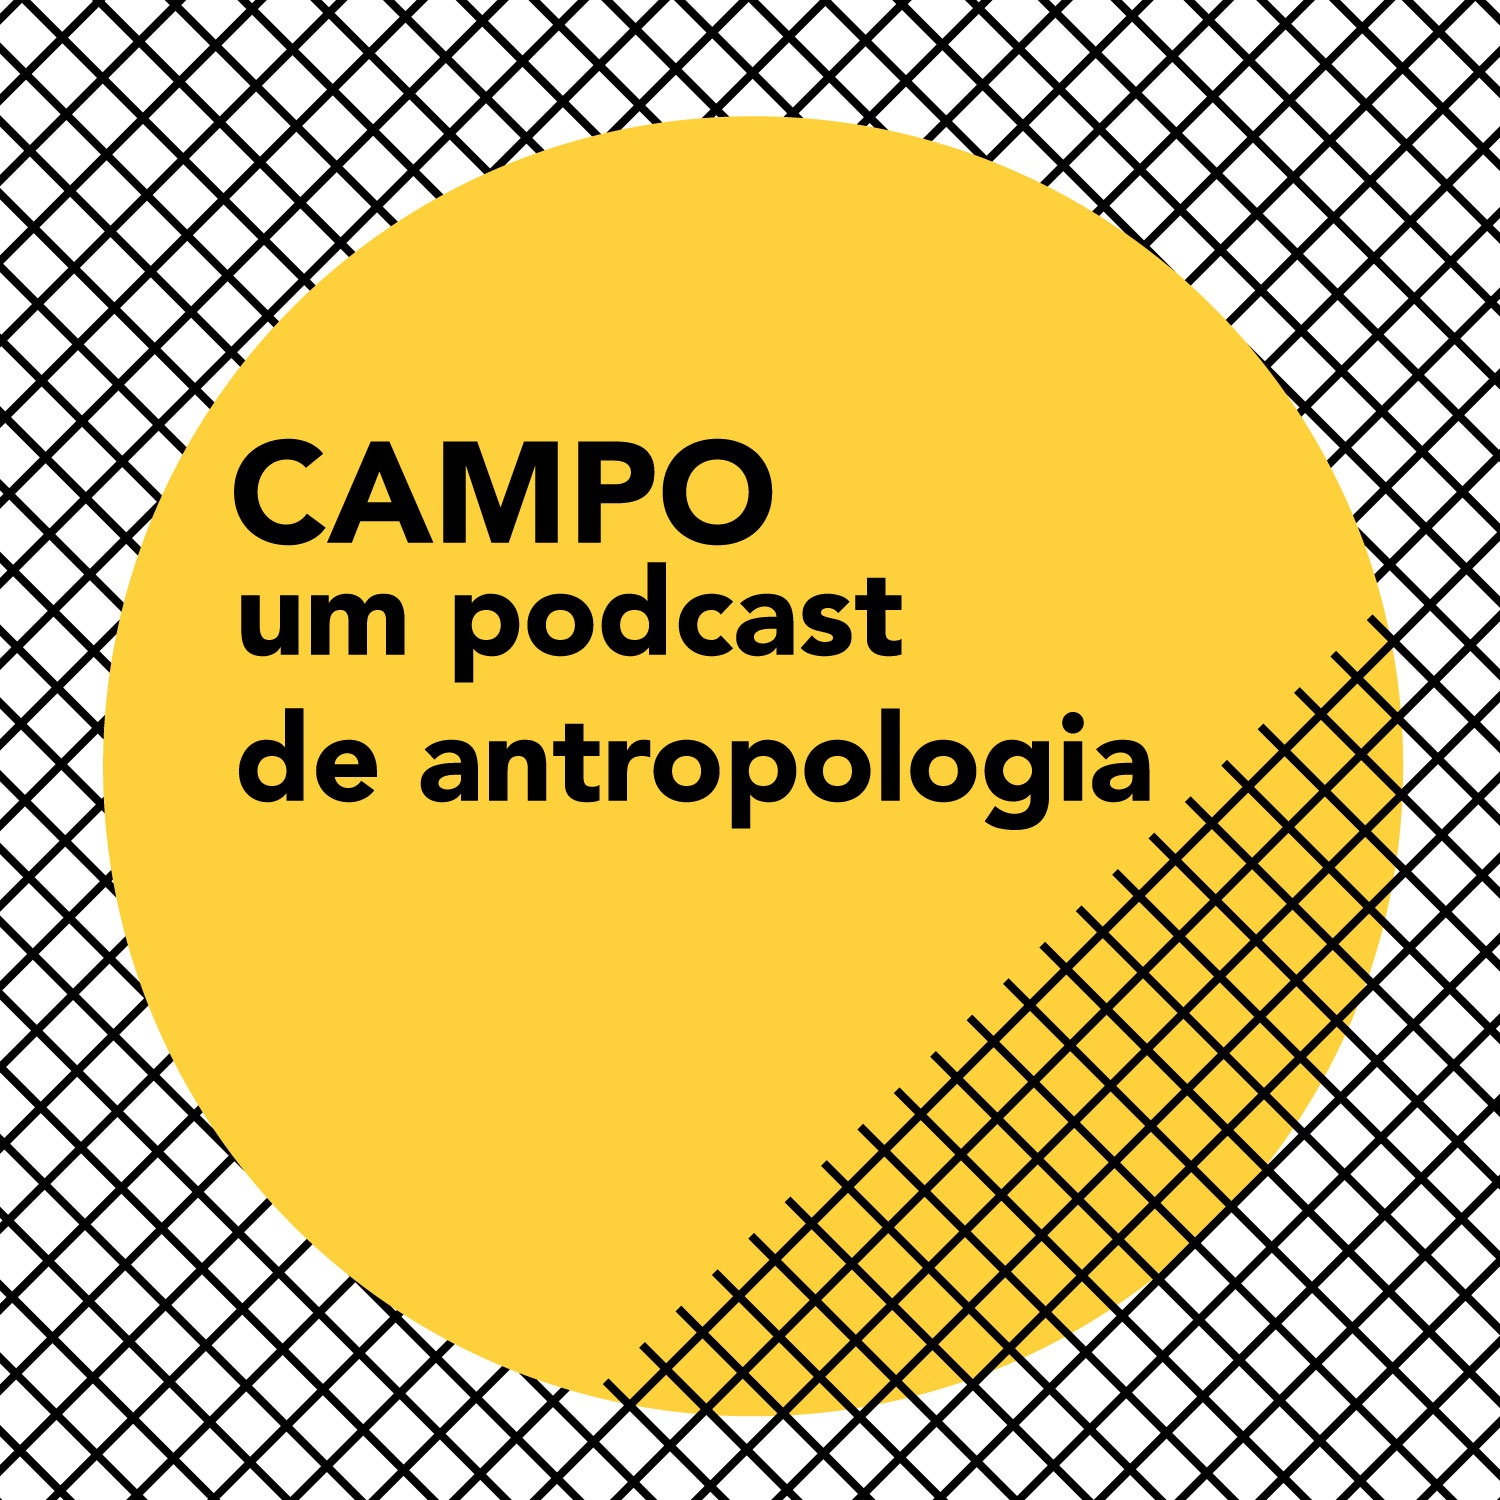 CAMPO um podcast de antropologia